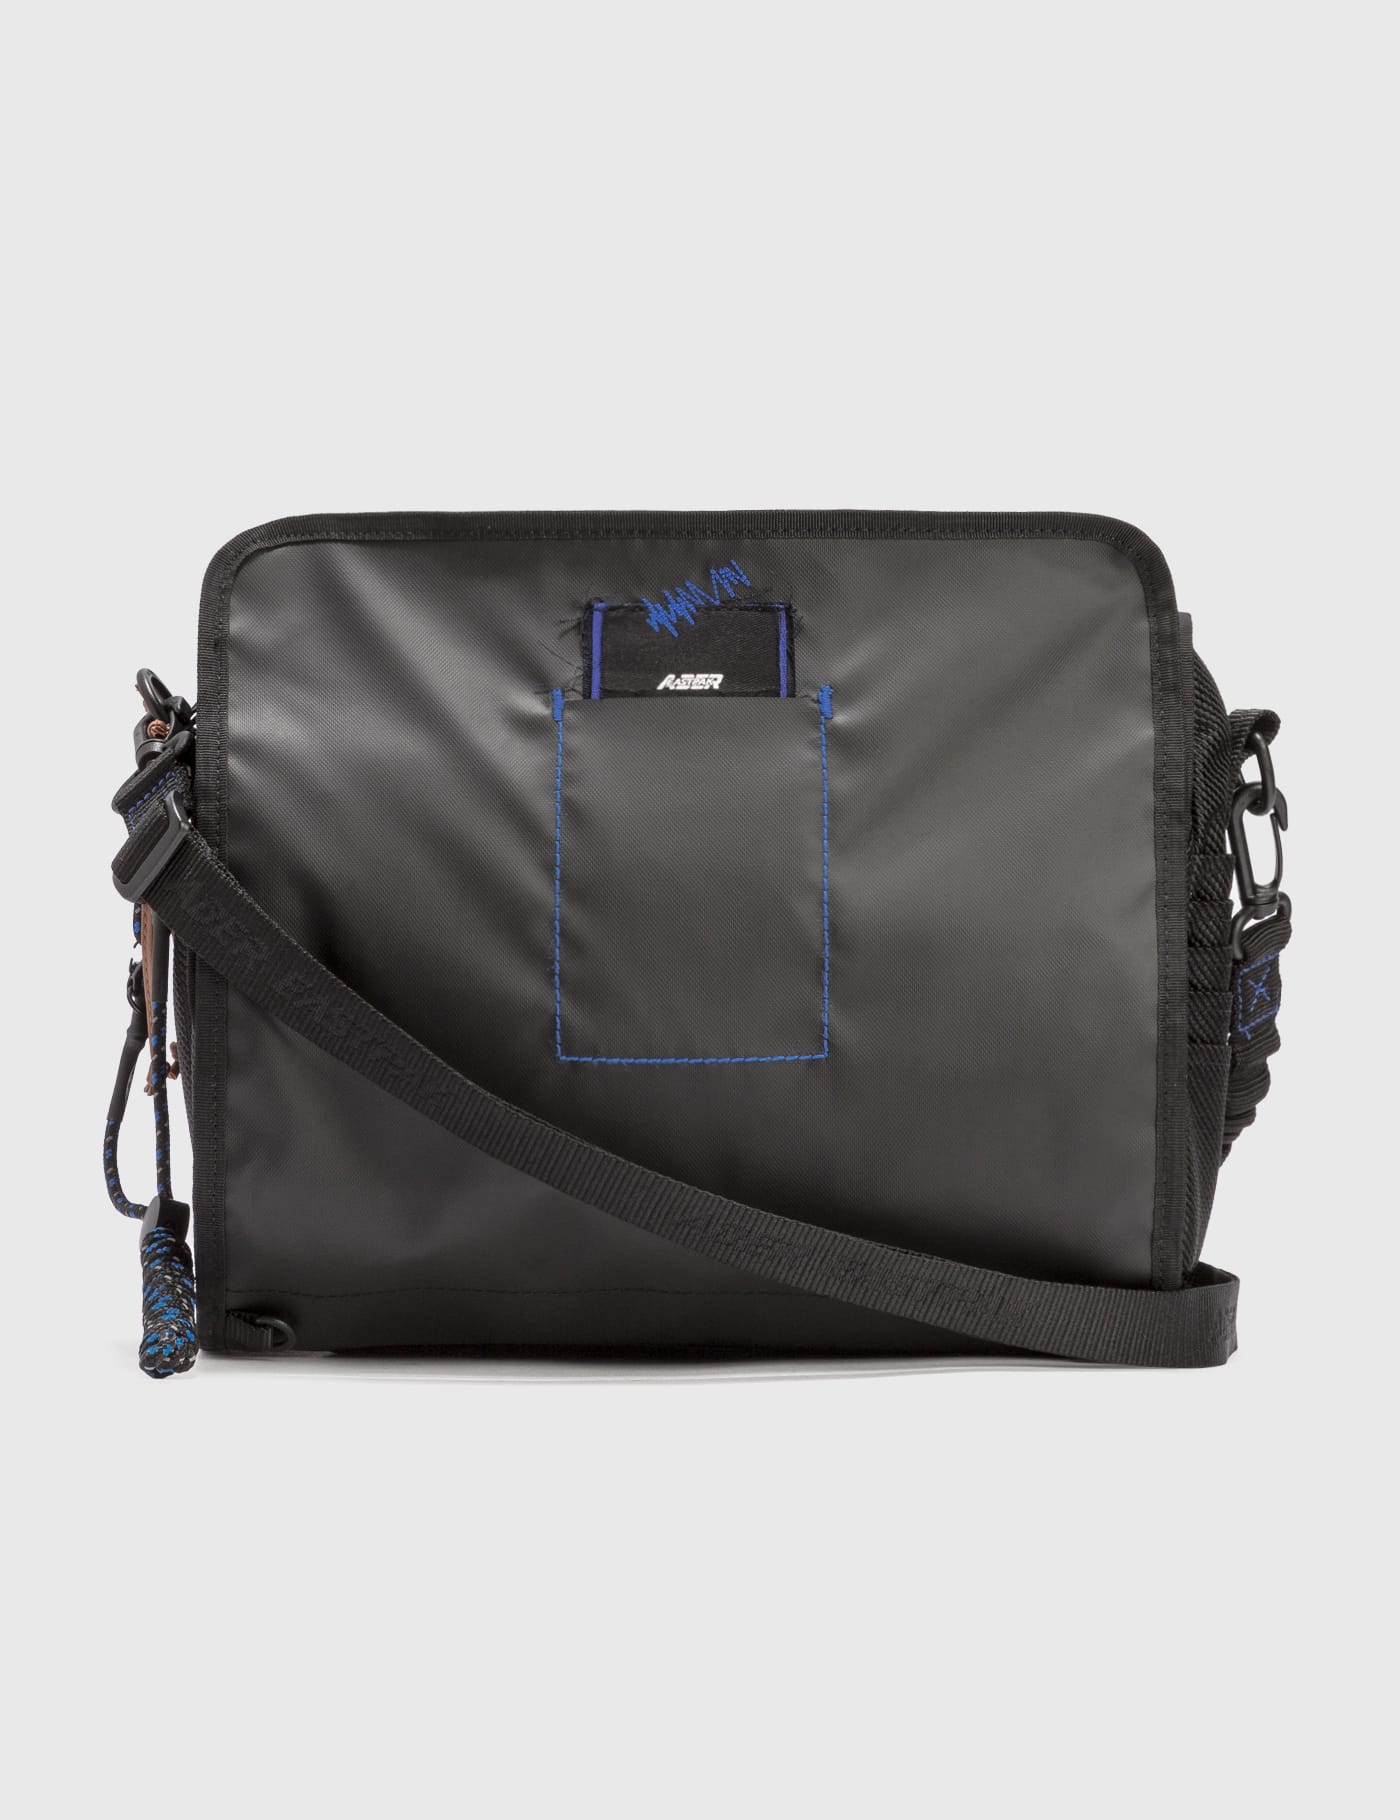 Eastpak - Eastpak x Ader Error Shoulder Bag | HBX - Globally 